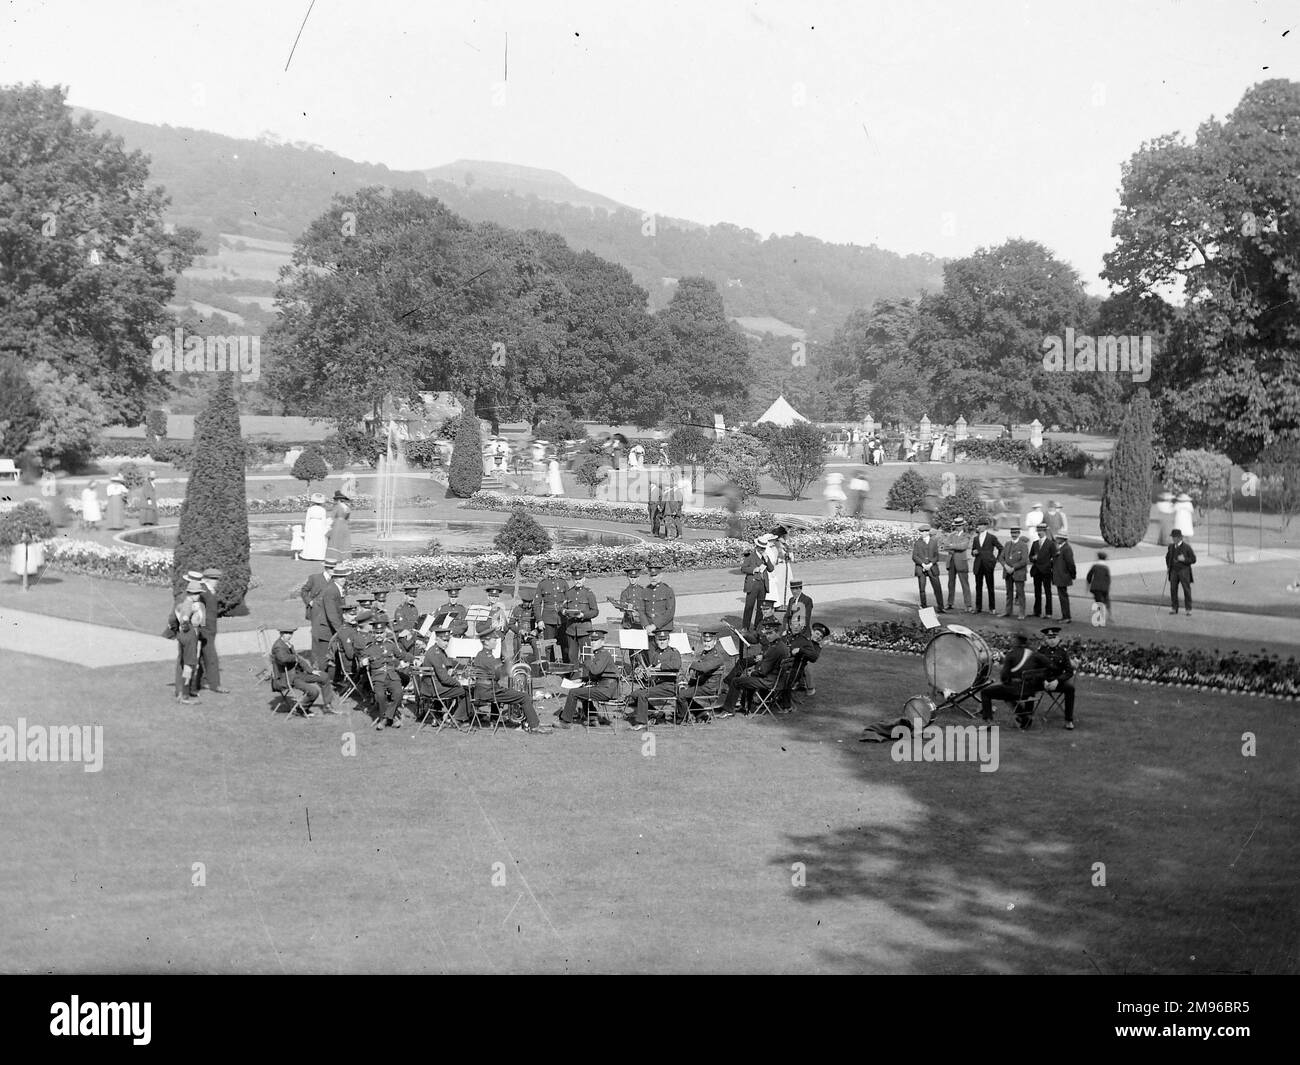 Una banda militare nel terreno di una grande casa di campagna a Crickhowell, Powys, Galles centrale. Vari civili sono a piedi, godendo i giardini e la fontana. Foto Stock